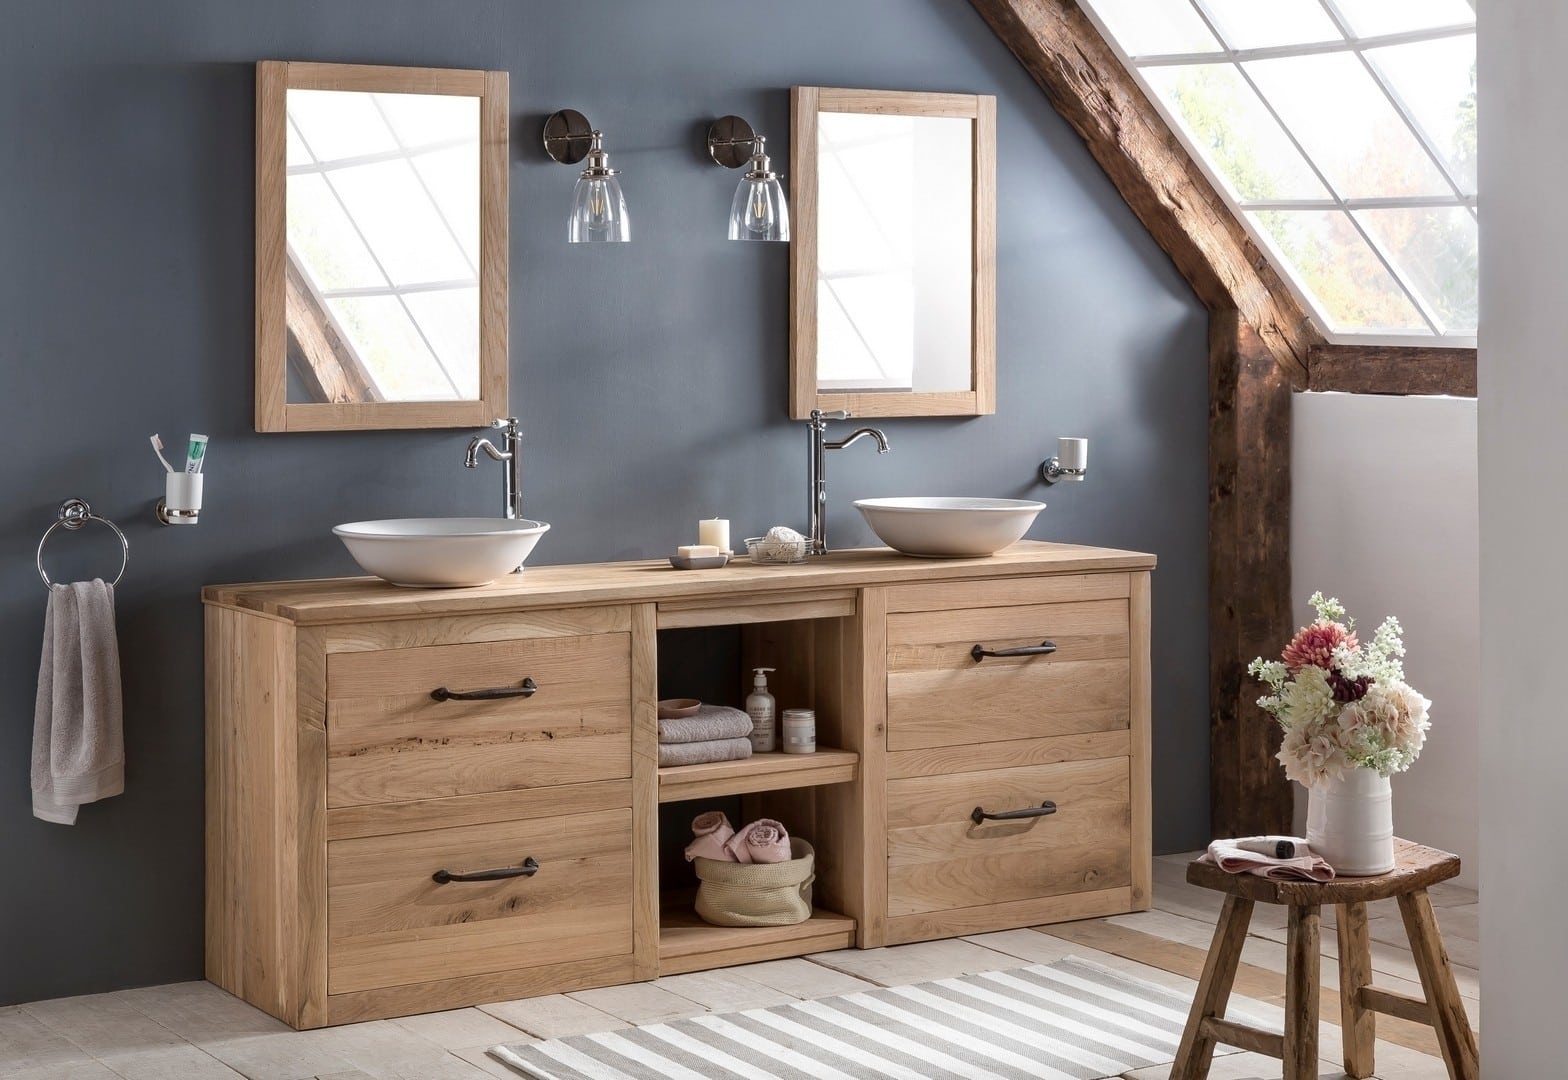 Landelijke badkamer van eiken met twee keramische waskommen voorzien van bijpassende spiegels.